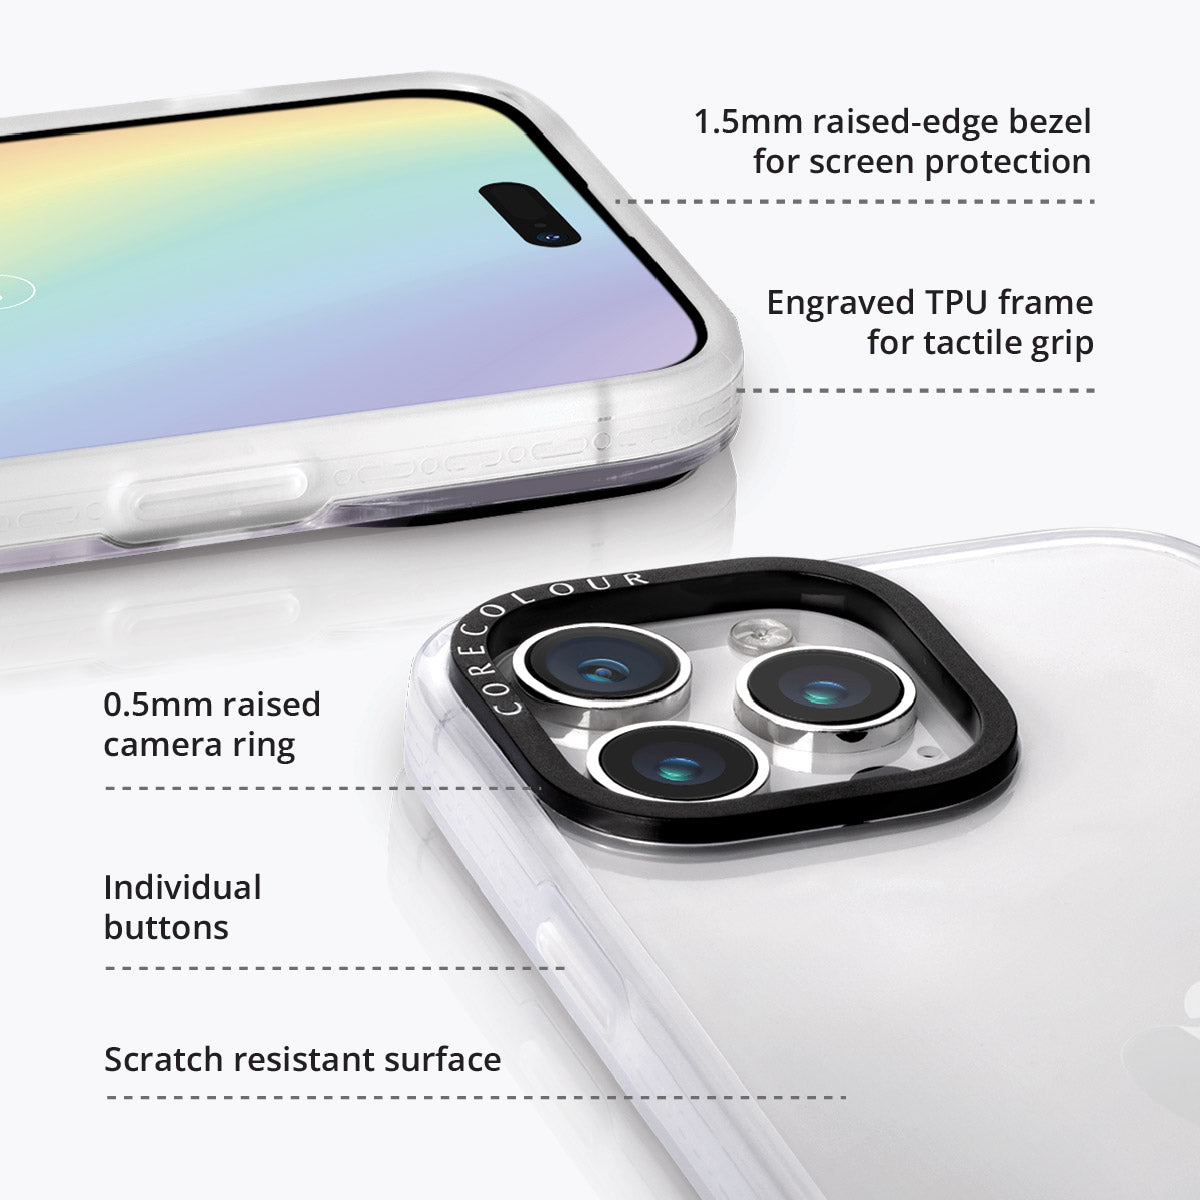 iPhone 12 Pro Max Cocker Spaniel Minimal Line Phone Case Magsafe Compatible - CORECOLOUR AU